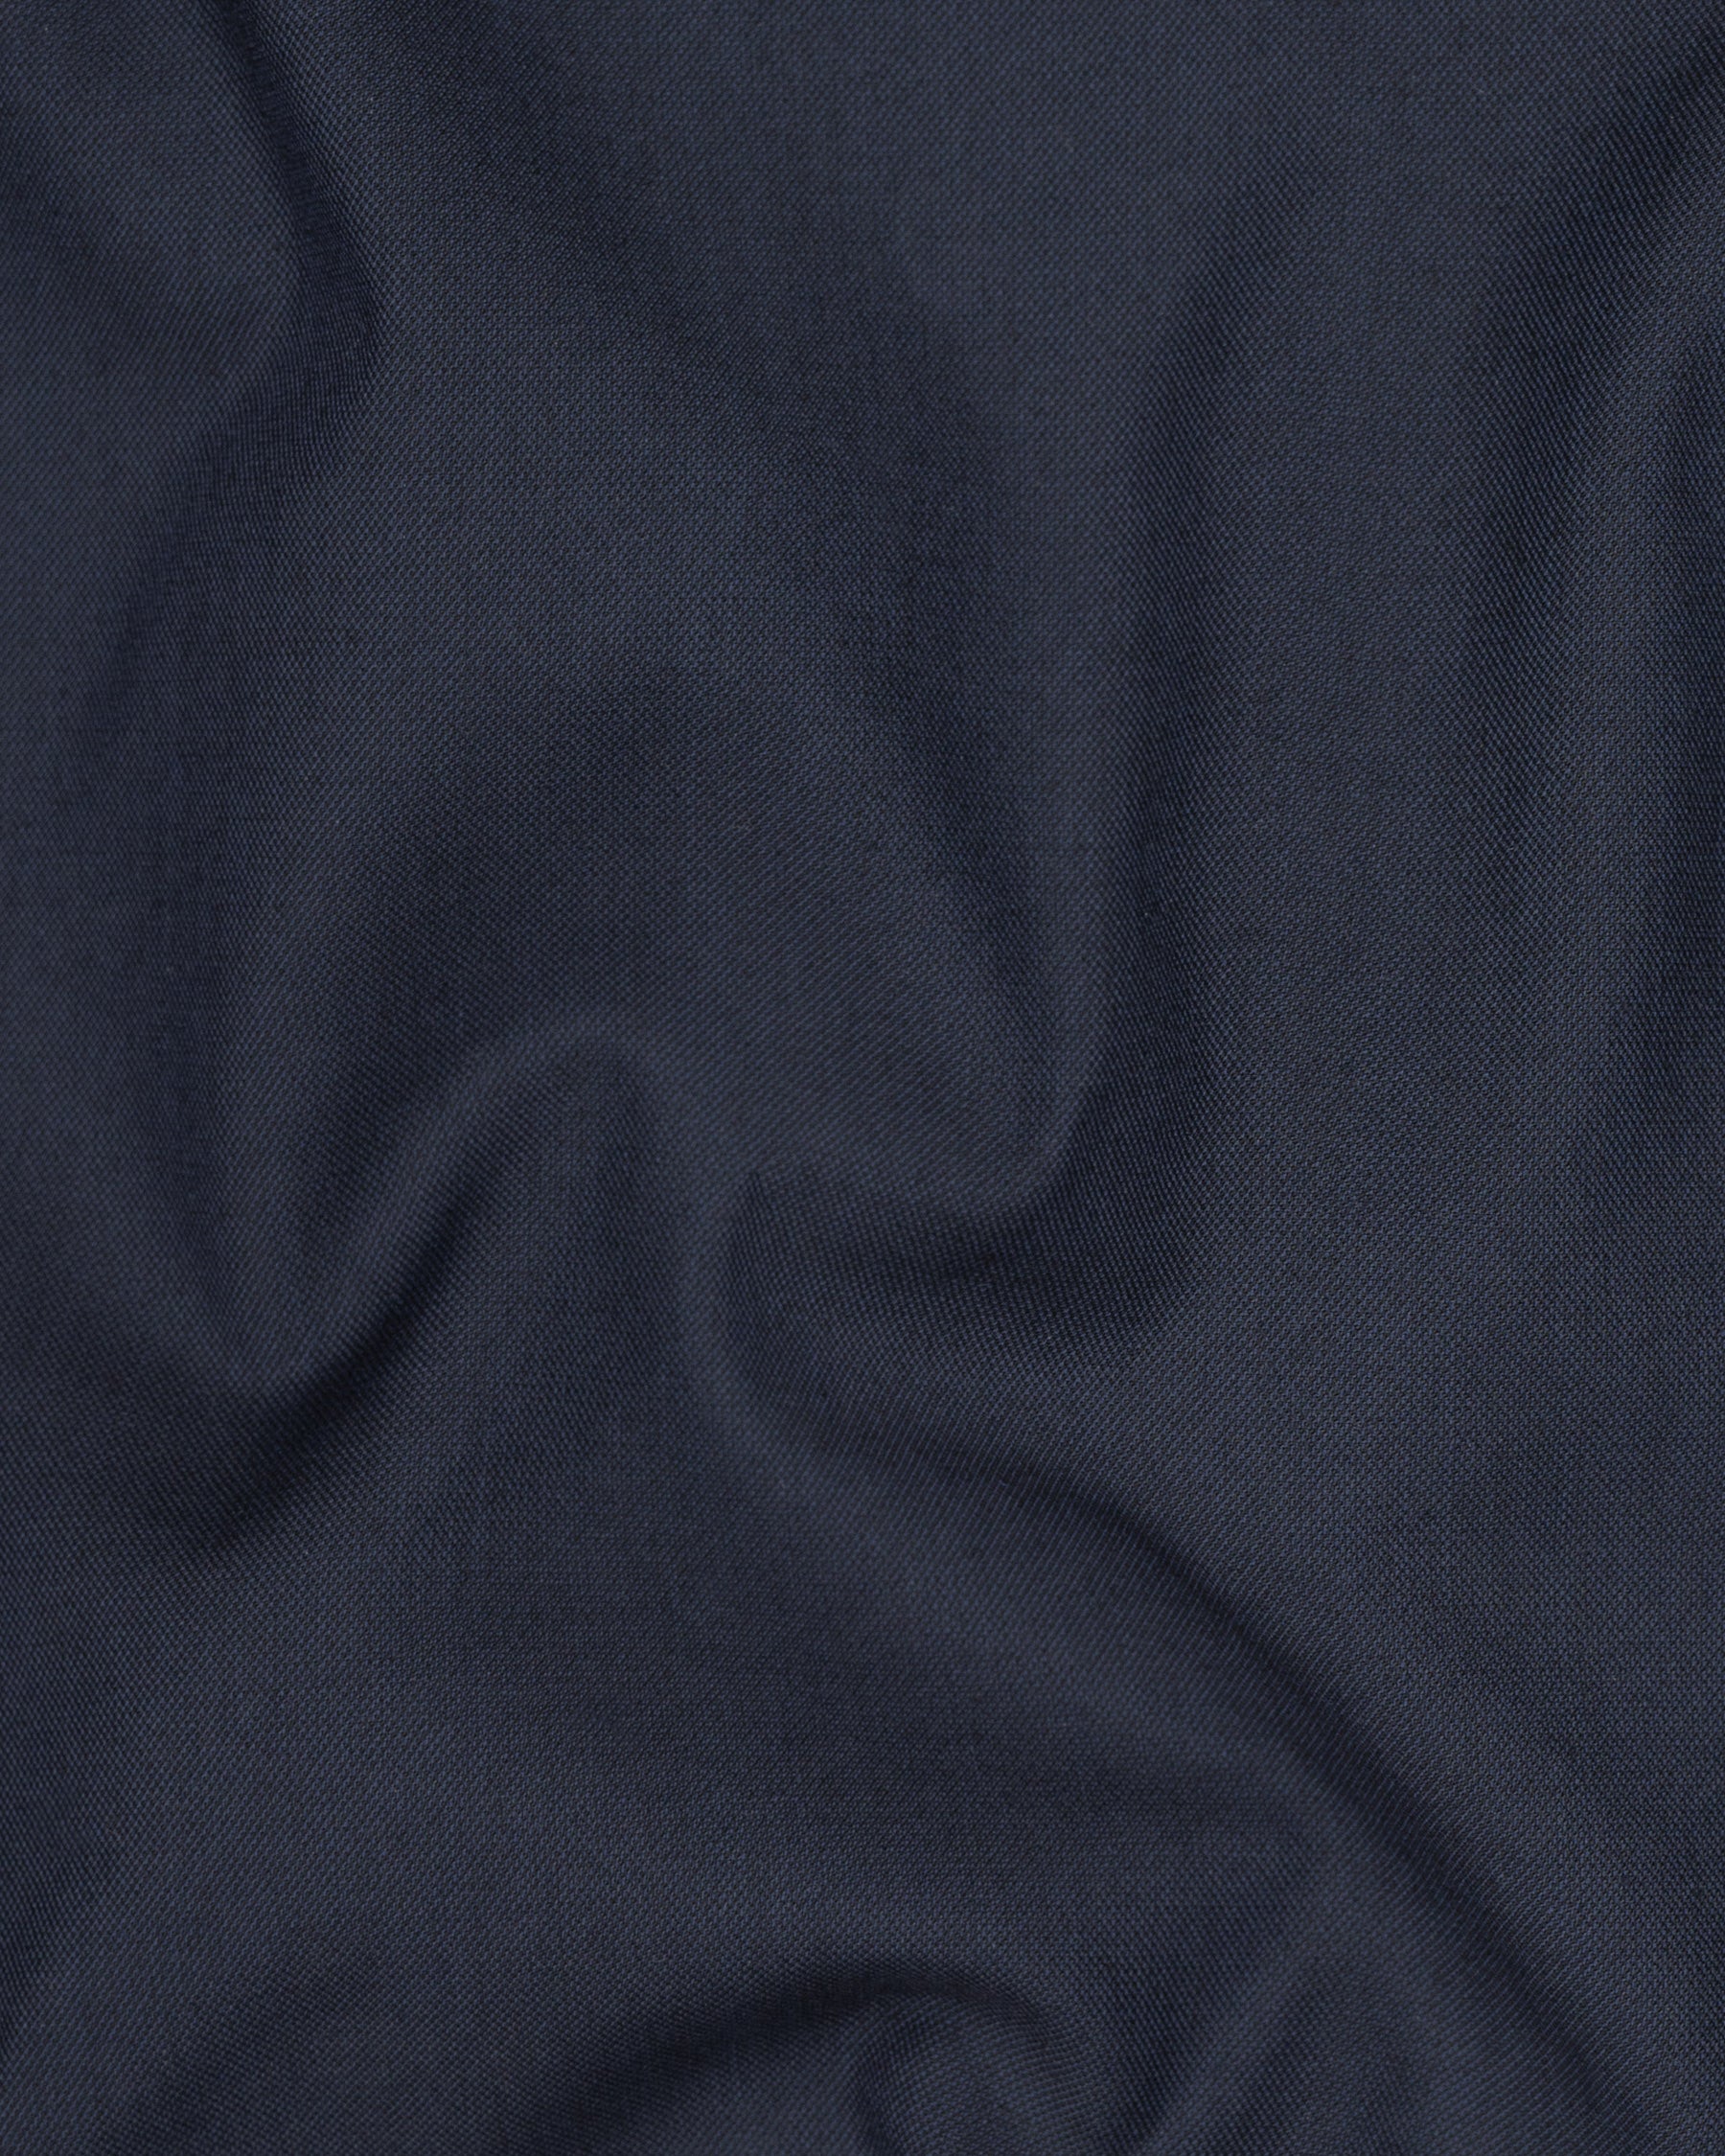 Greyish Blue Wool Rich Pant T1544-28, T1544-30, T1544-32, T1544-34, T1544-36, T1544-38, T1544-40, T1544-42, T1544-44